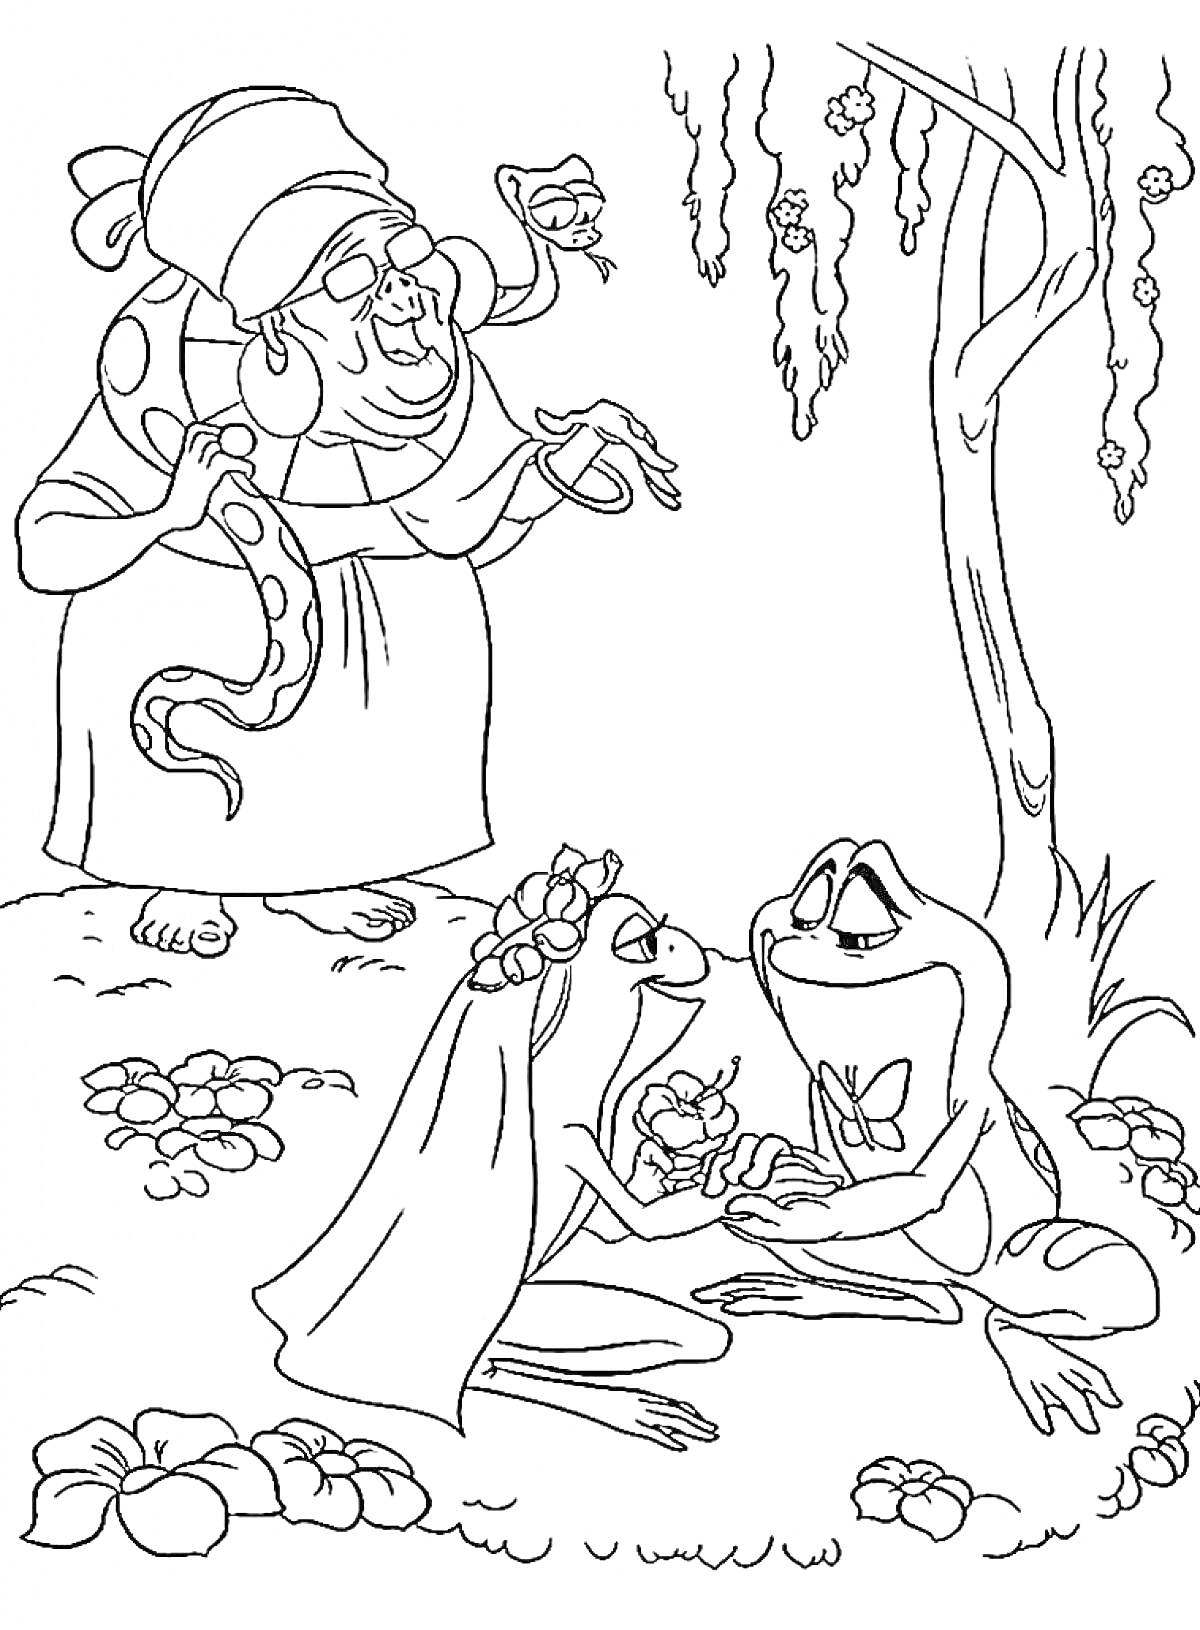 Раскраска Принцесса-лягушка, принц-лягушонок, колдунья, цветы, дерево